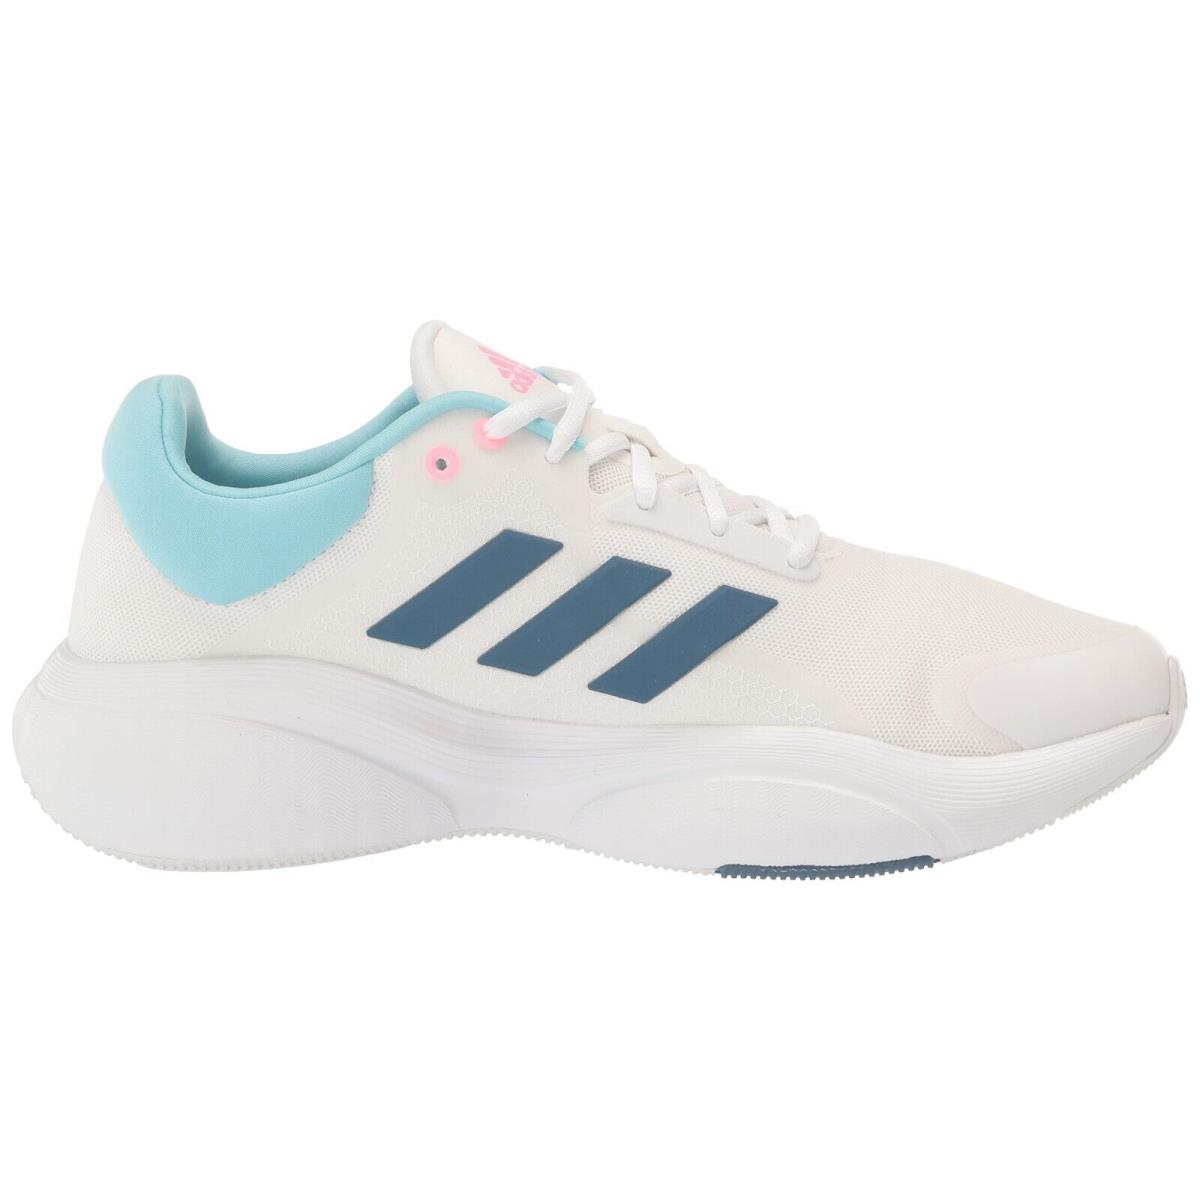 Adidas Women Response Fashion Running Shoes GX2005 White Blue Pink 10